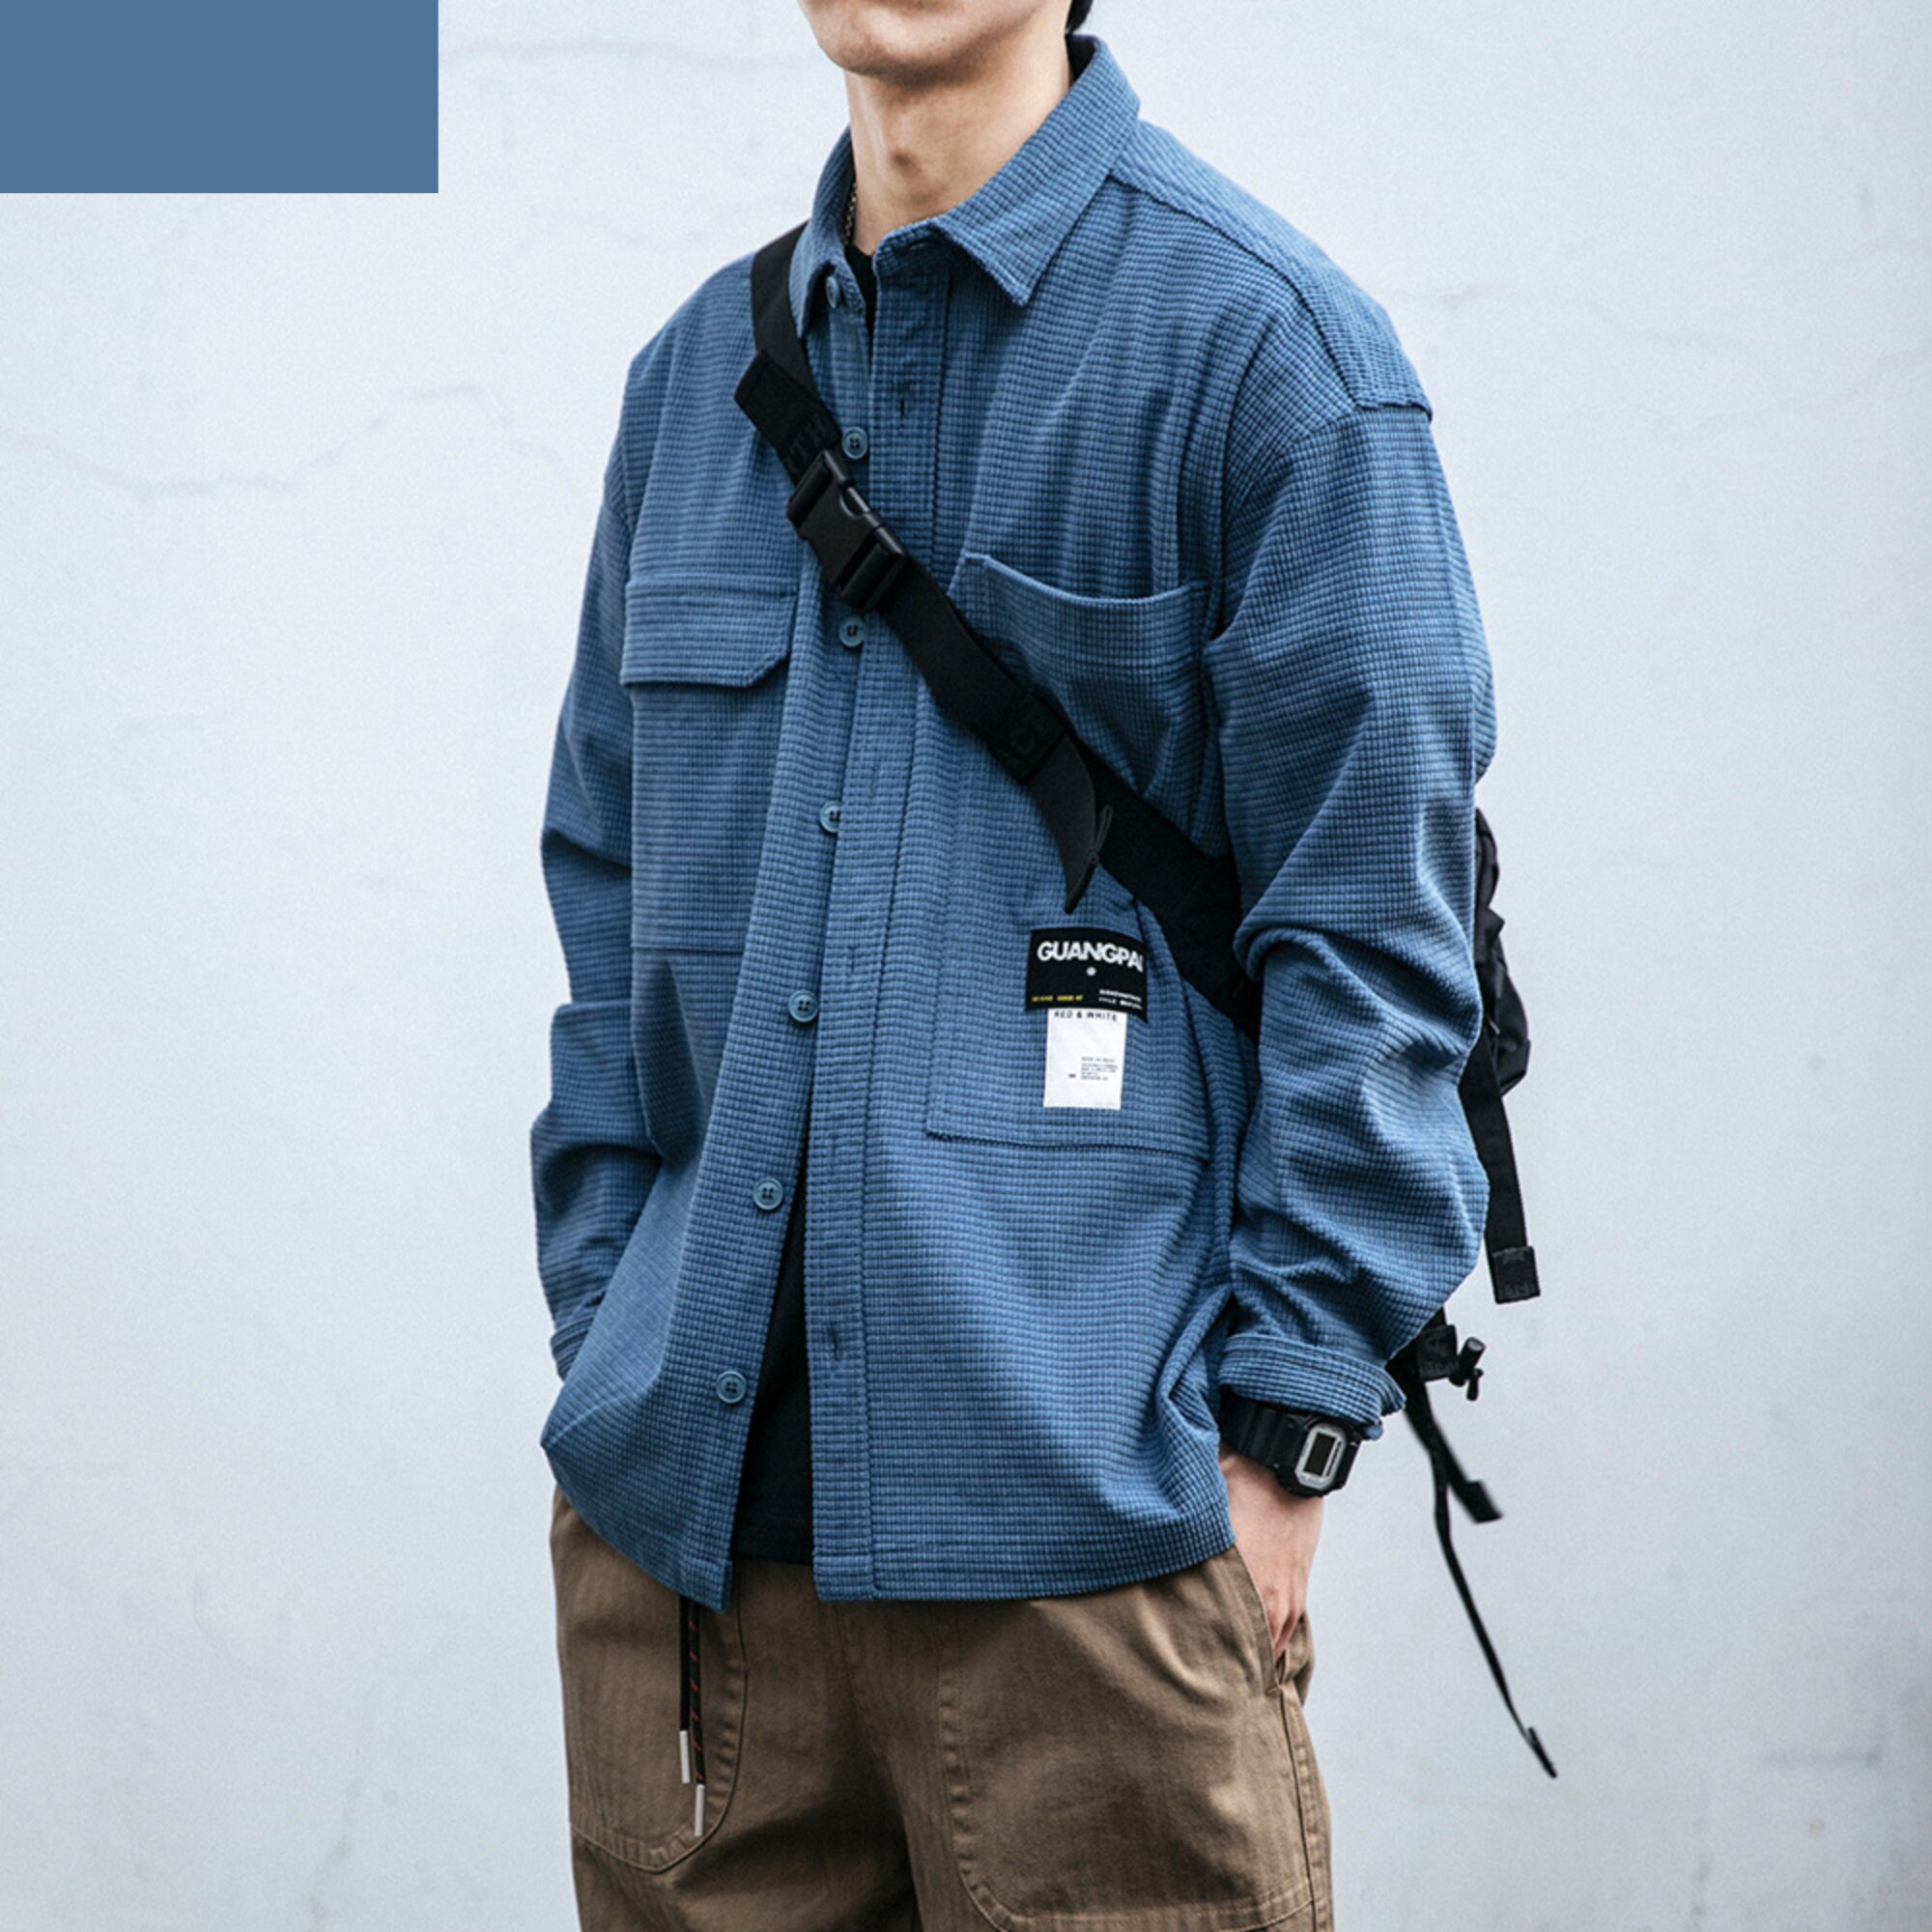 Japanese Clothing Men - Etsy